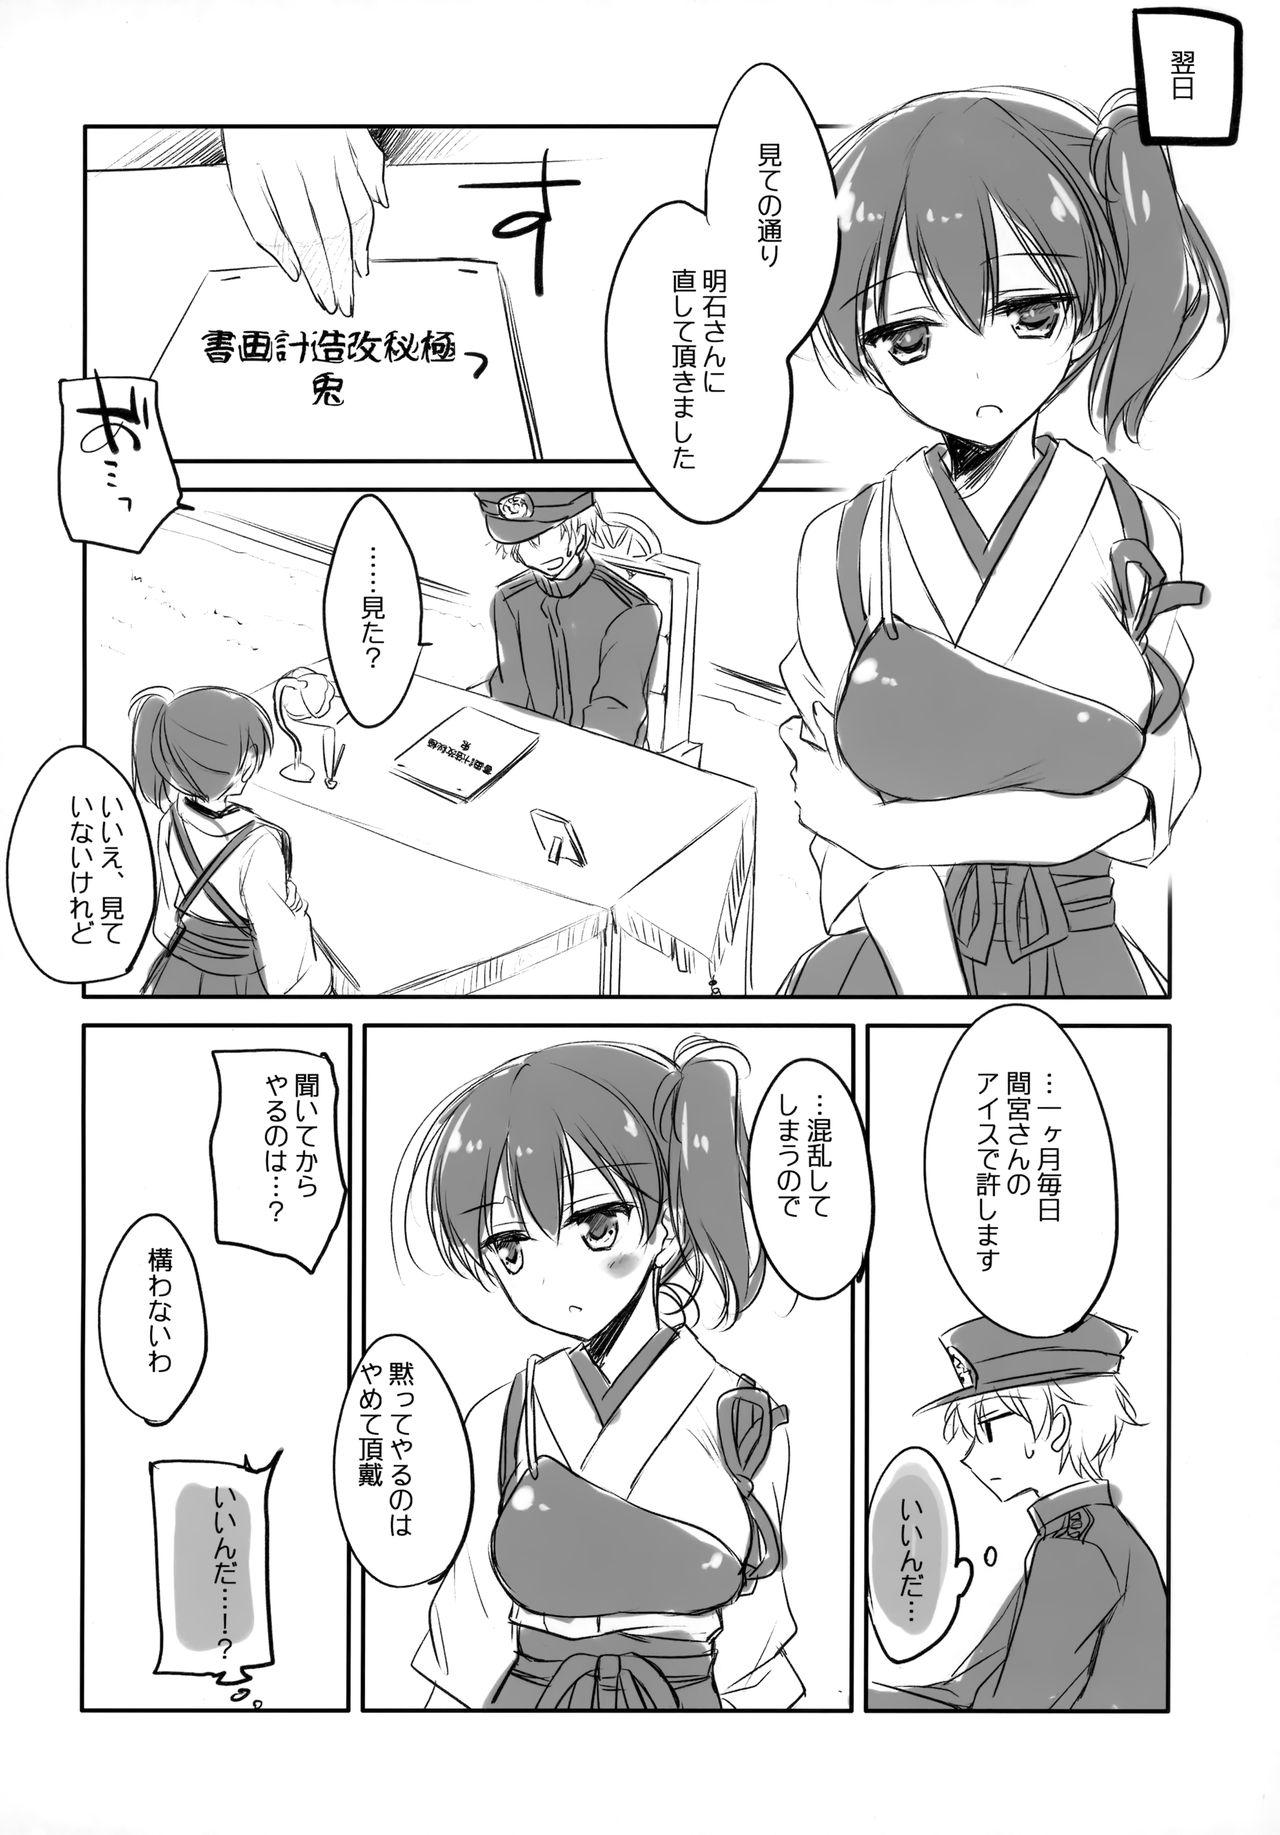 Kaga-san no Usamimi to Shippo Sawarasete 14